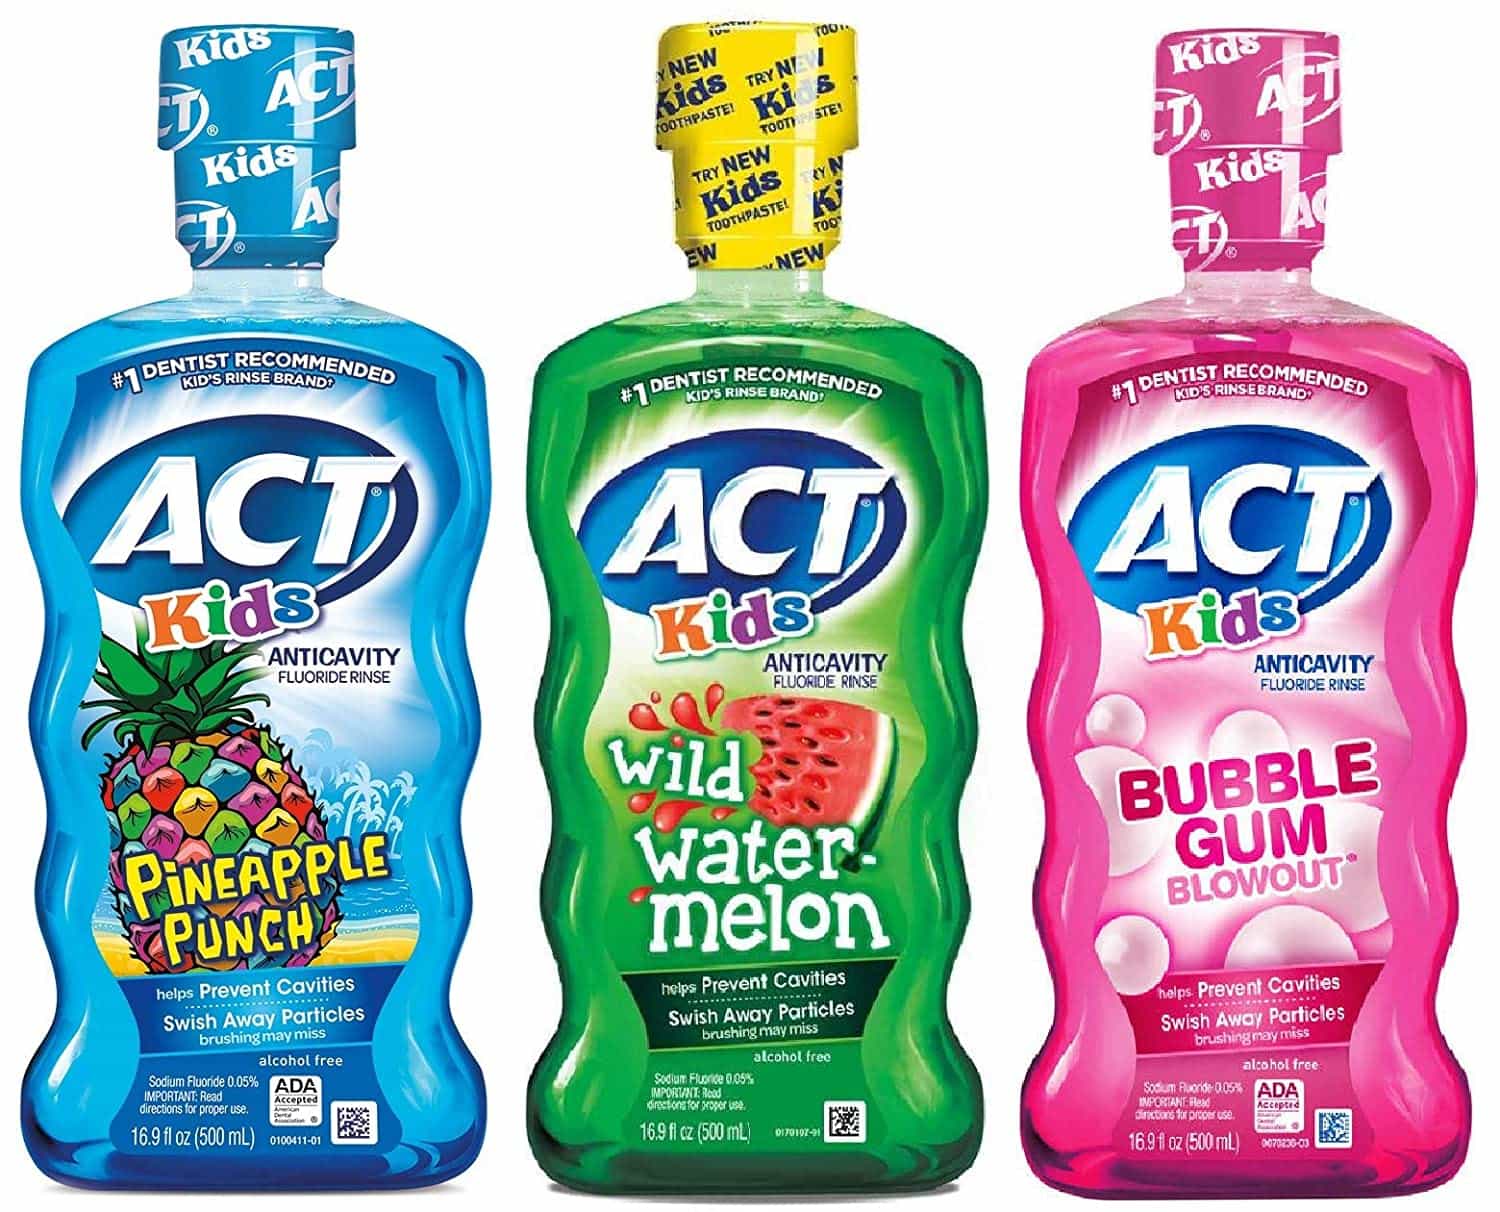 Several bottles of A C T mouthwash for kids